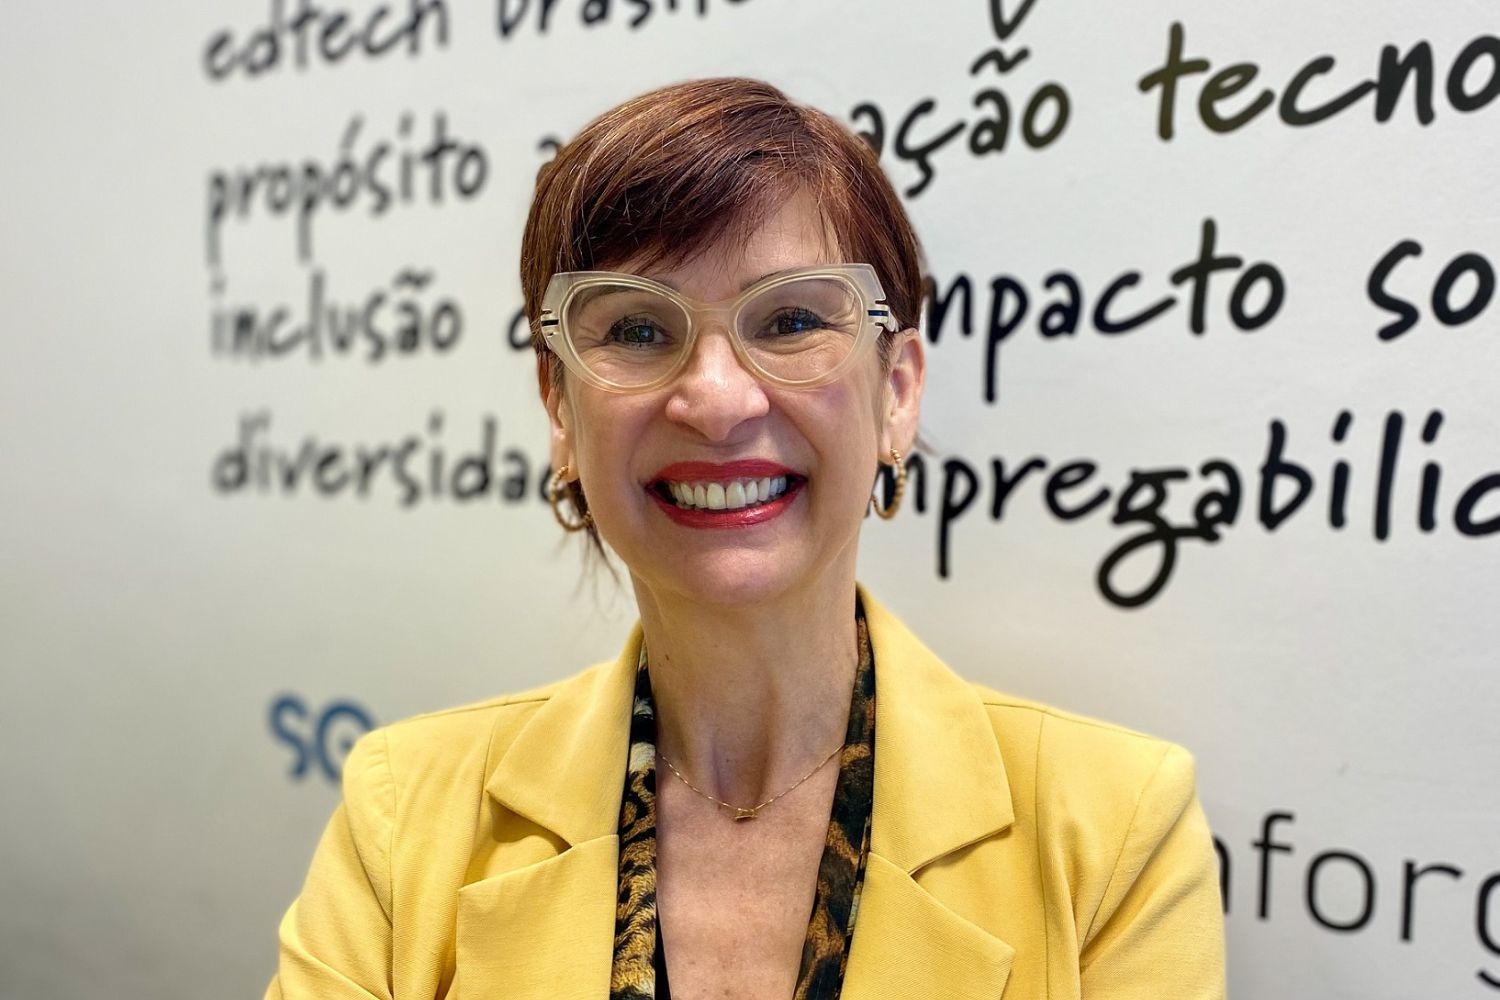 Cintia Mourão, diretora de marketing e comunicação da SoulCode Academy